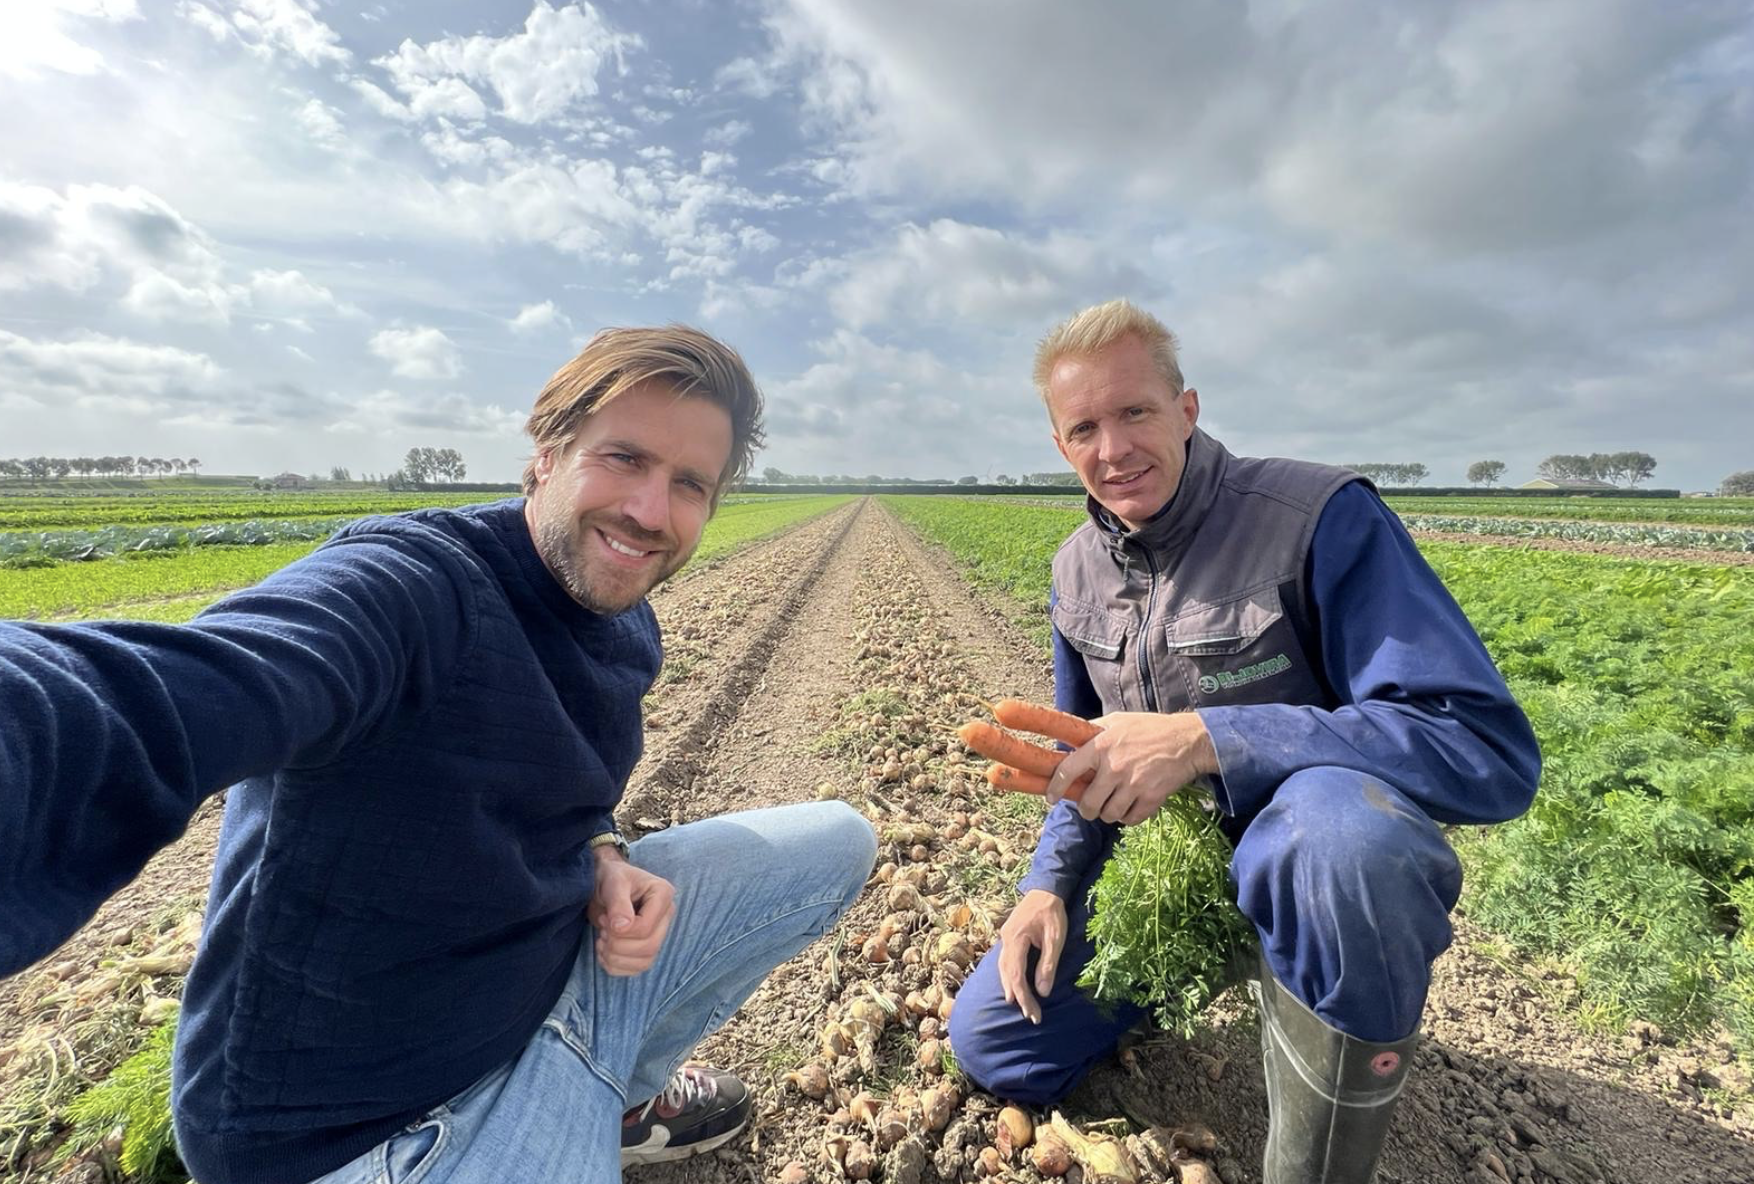 No Waste Army helpt boer Cornelis met wortels die niet voldoen aan schoonheidsideaal